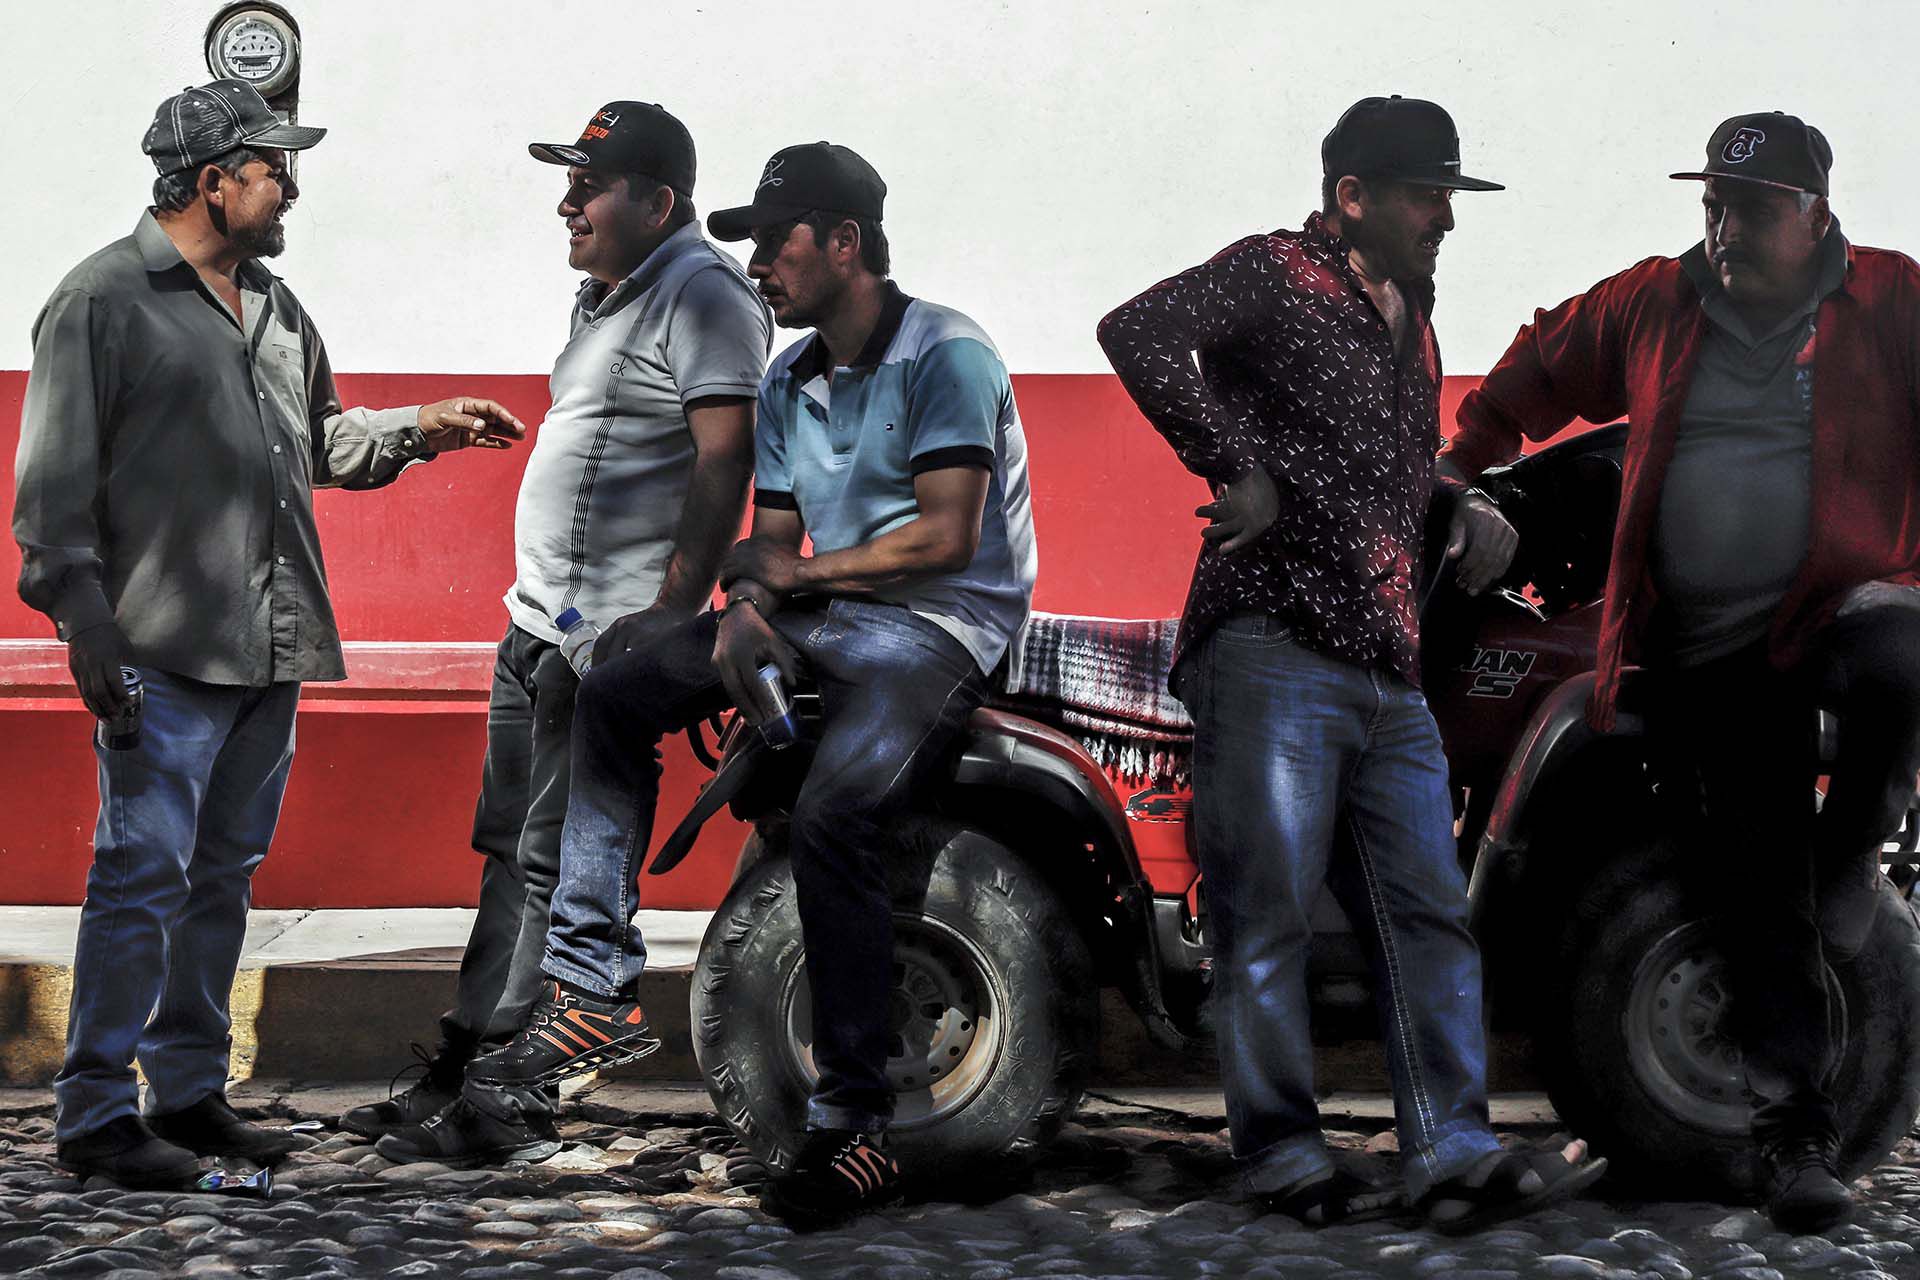 Tras la captura de "El Chapo", varios grupos pelearon por el control de la zona (Foto: RASHIDE FRIAS / AFP)